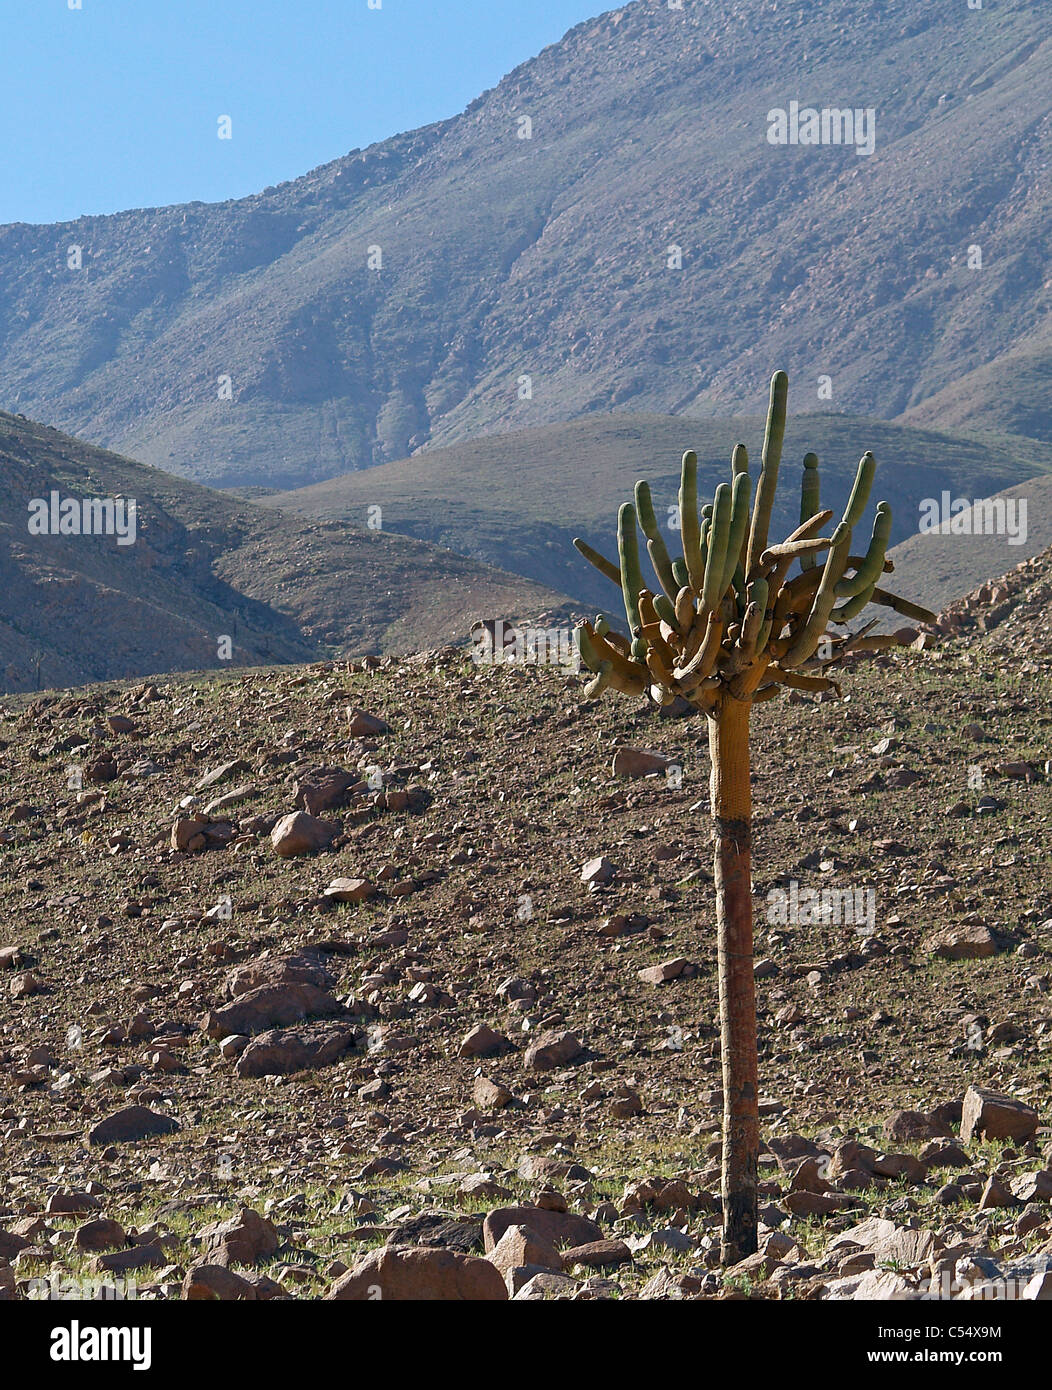 Candelabra cactus in Valle Lluta, Atacama Desert,Chile Stock Photo